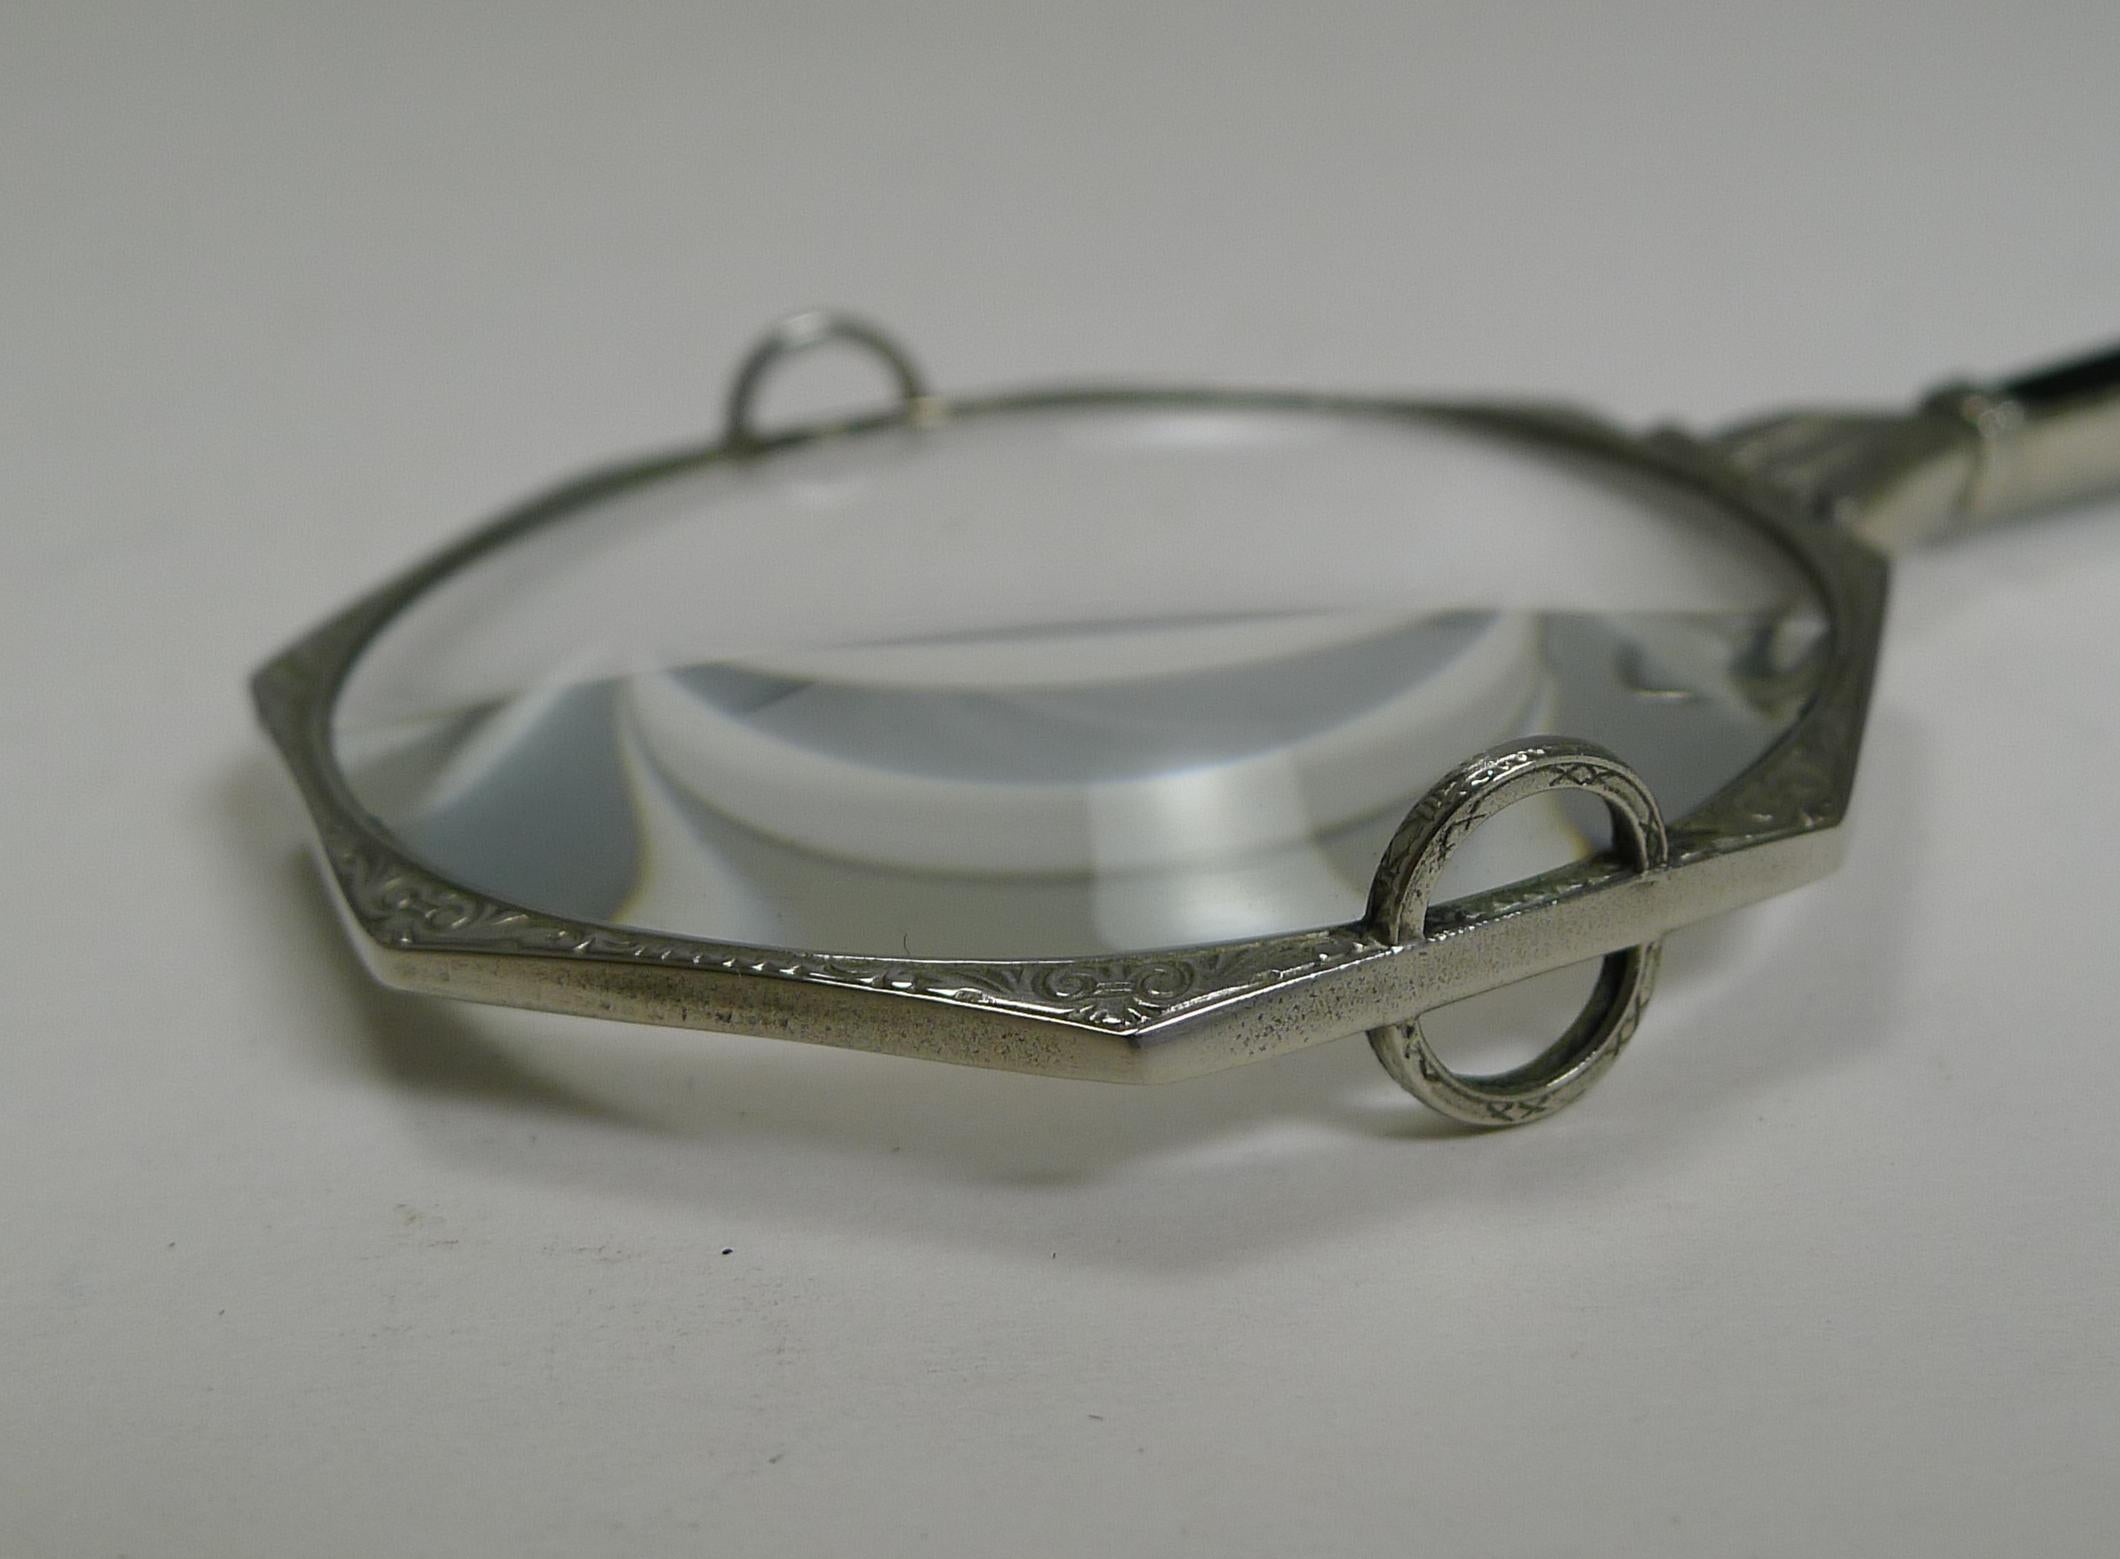 Ein sehr glamouröses Vergrößerungsglas aus weißem Metall (nicht markiert:: aber als Silber getestet) mit eingraviertem Dekor und einem Klappgriff mit einem schwarzen Steineinsatz. 

Auf beiden Seiten des Objektivs befinden sich zwei halbkreisförmige